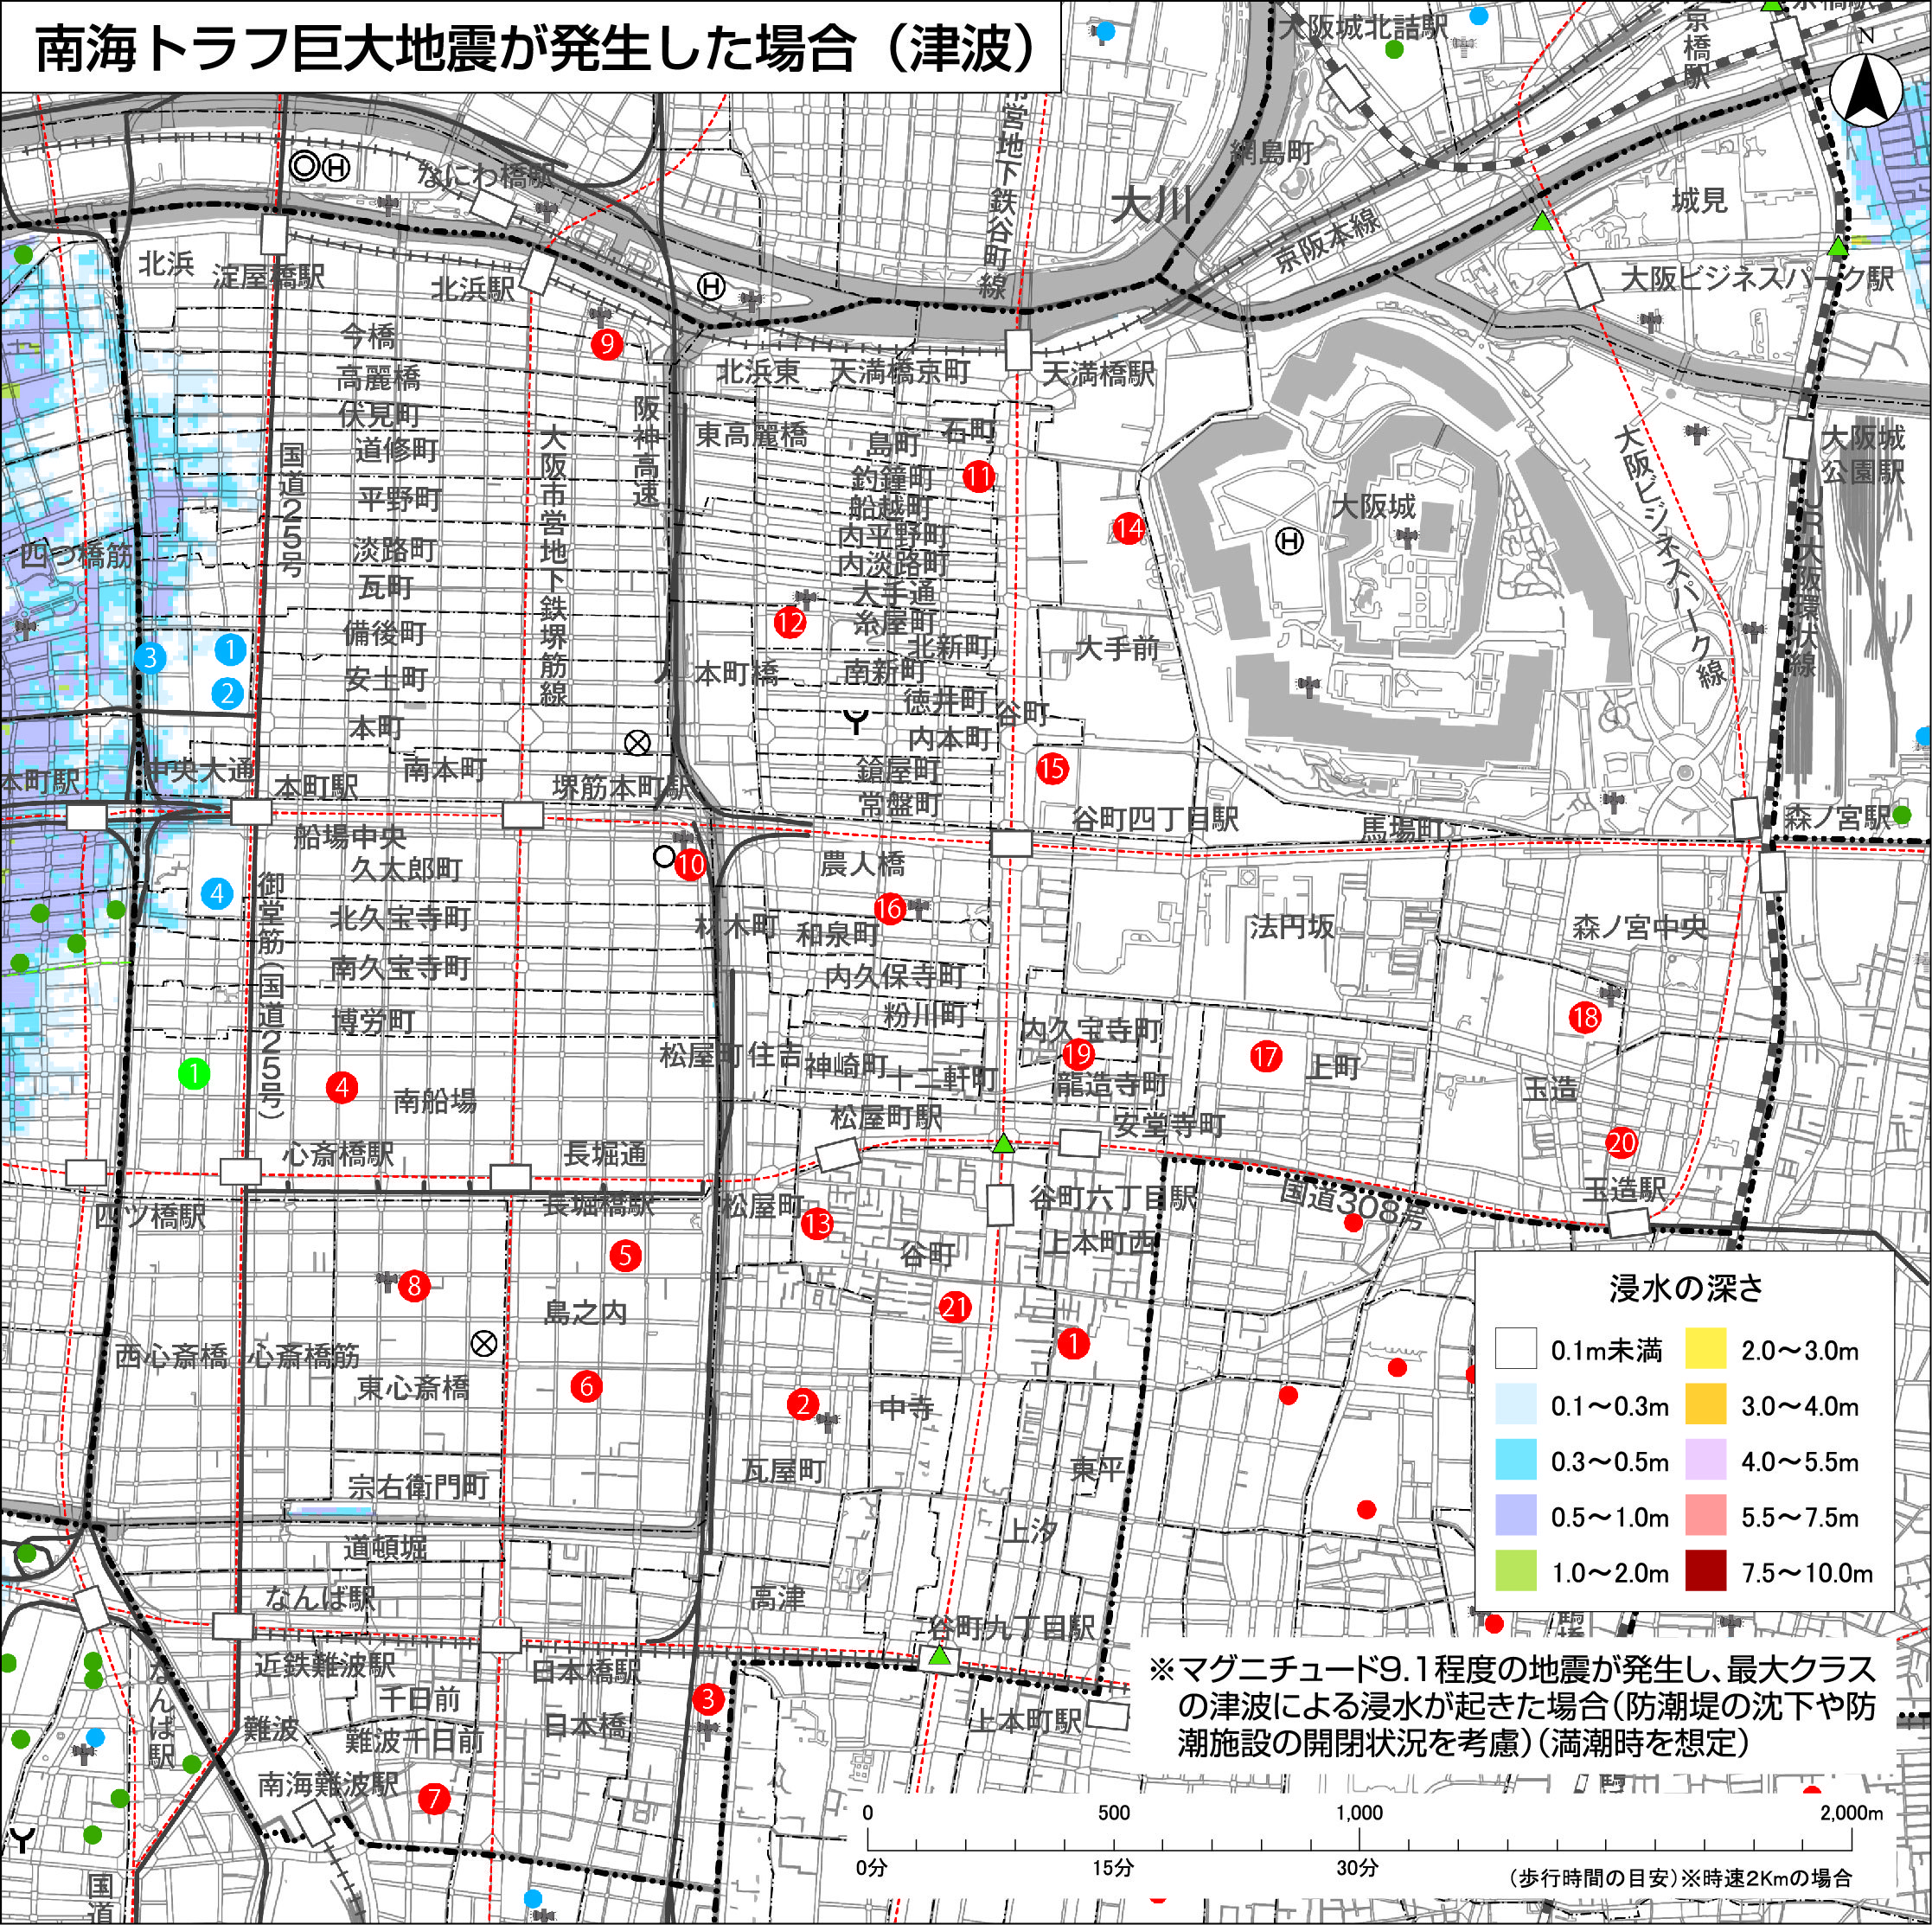 大阪市 水害ハザードマップ 中央区 災害に備える ハザードマップ